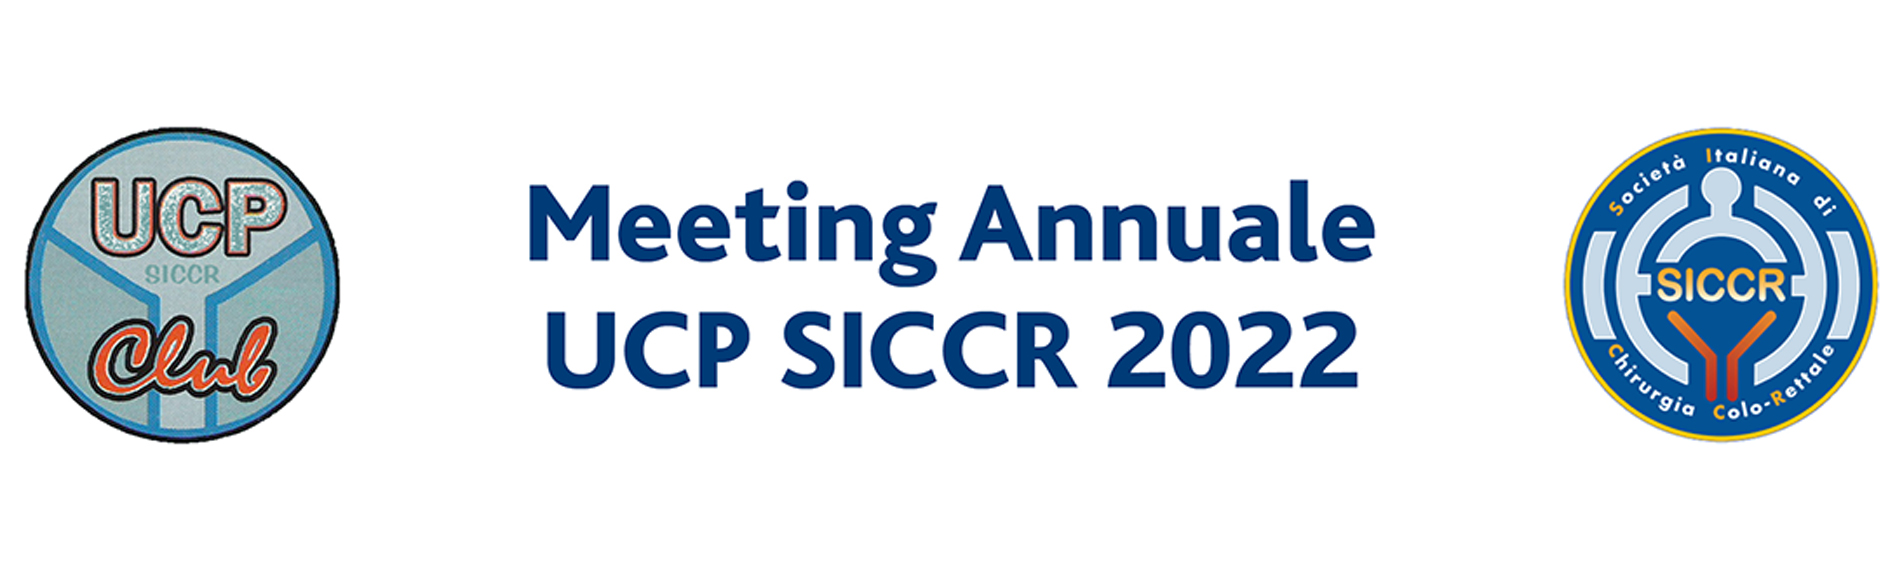 Meeting Annuale dei Coordinatori UCP SICCR e Rappresentanti Regionali, 25 giugno 2022